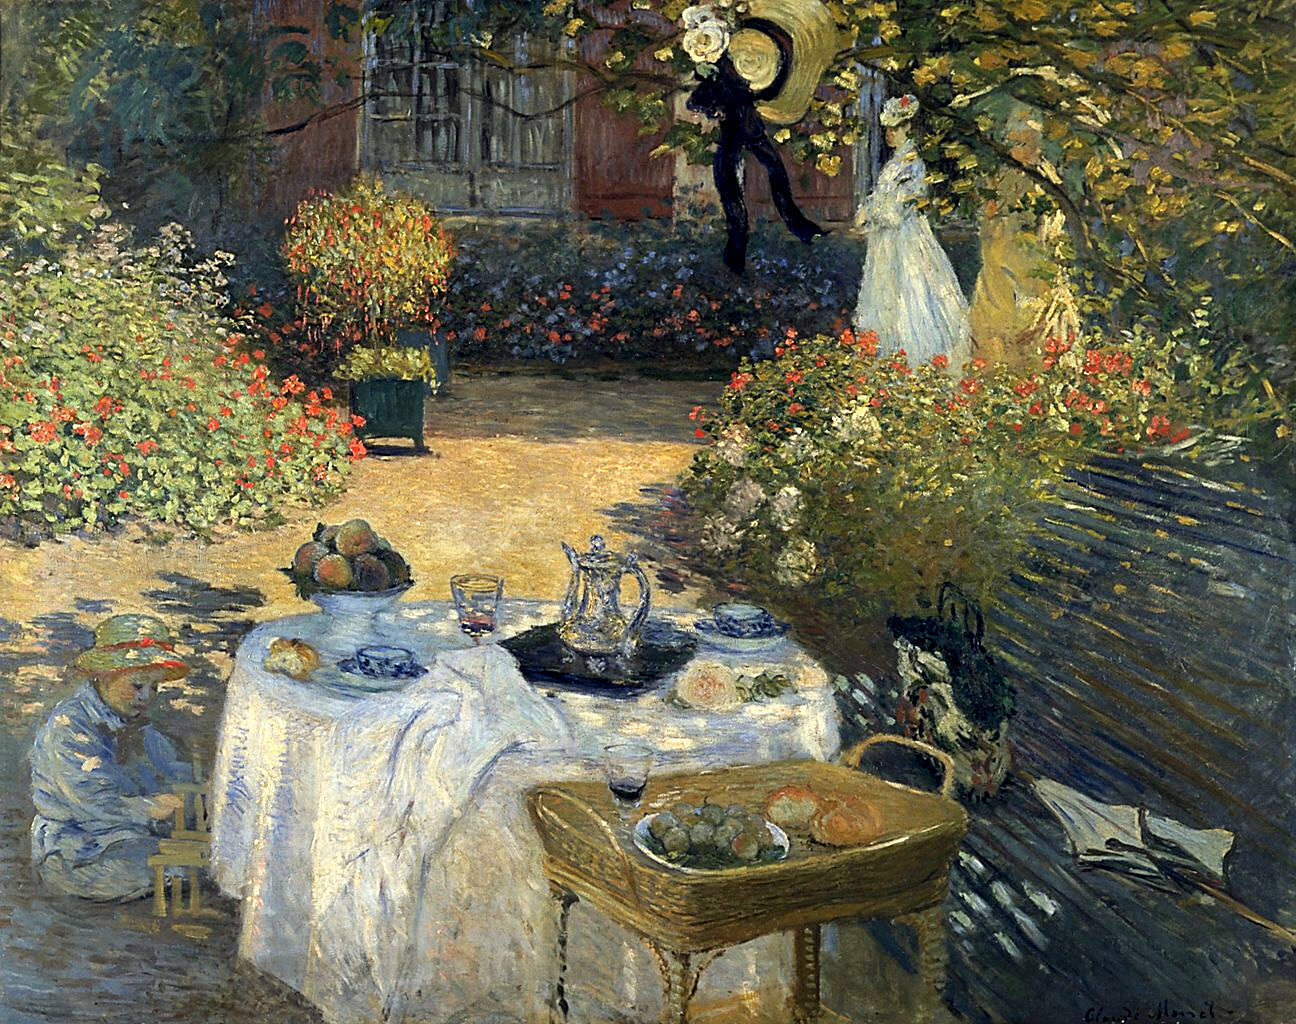 share a summer garden lunch with Monet